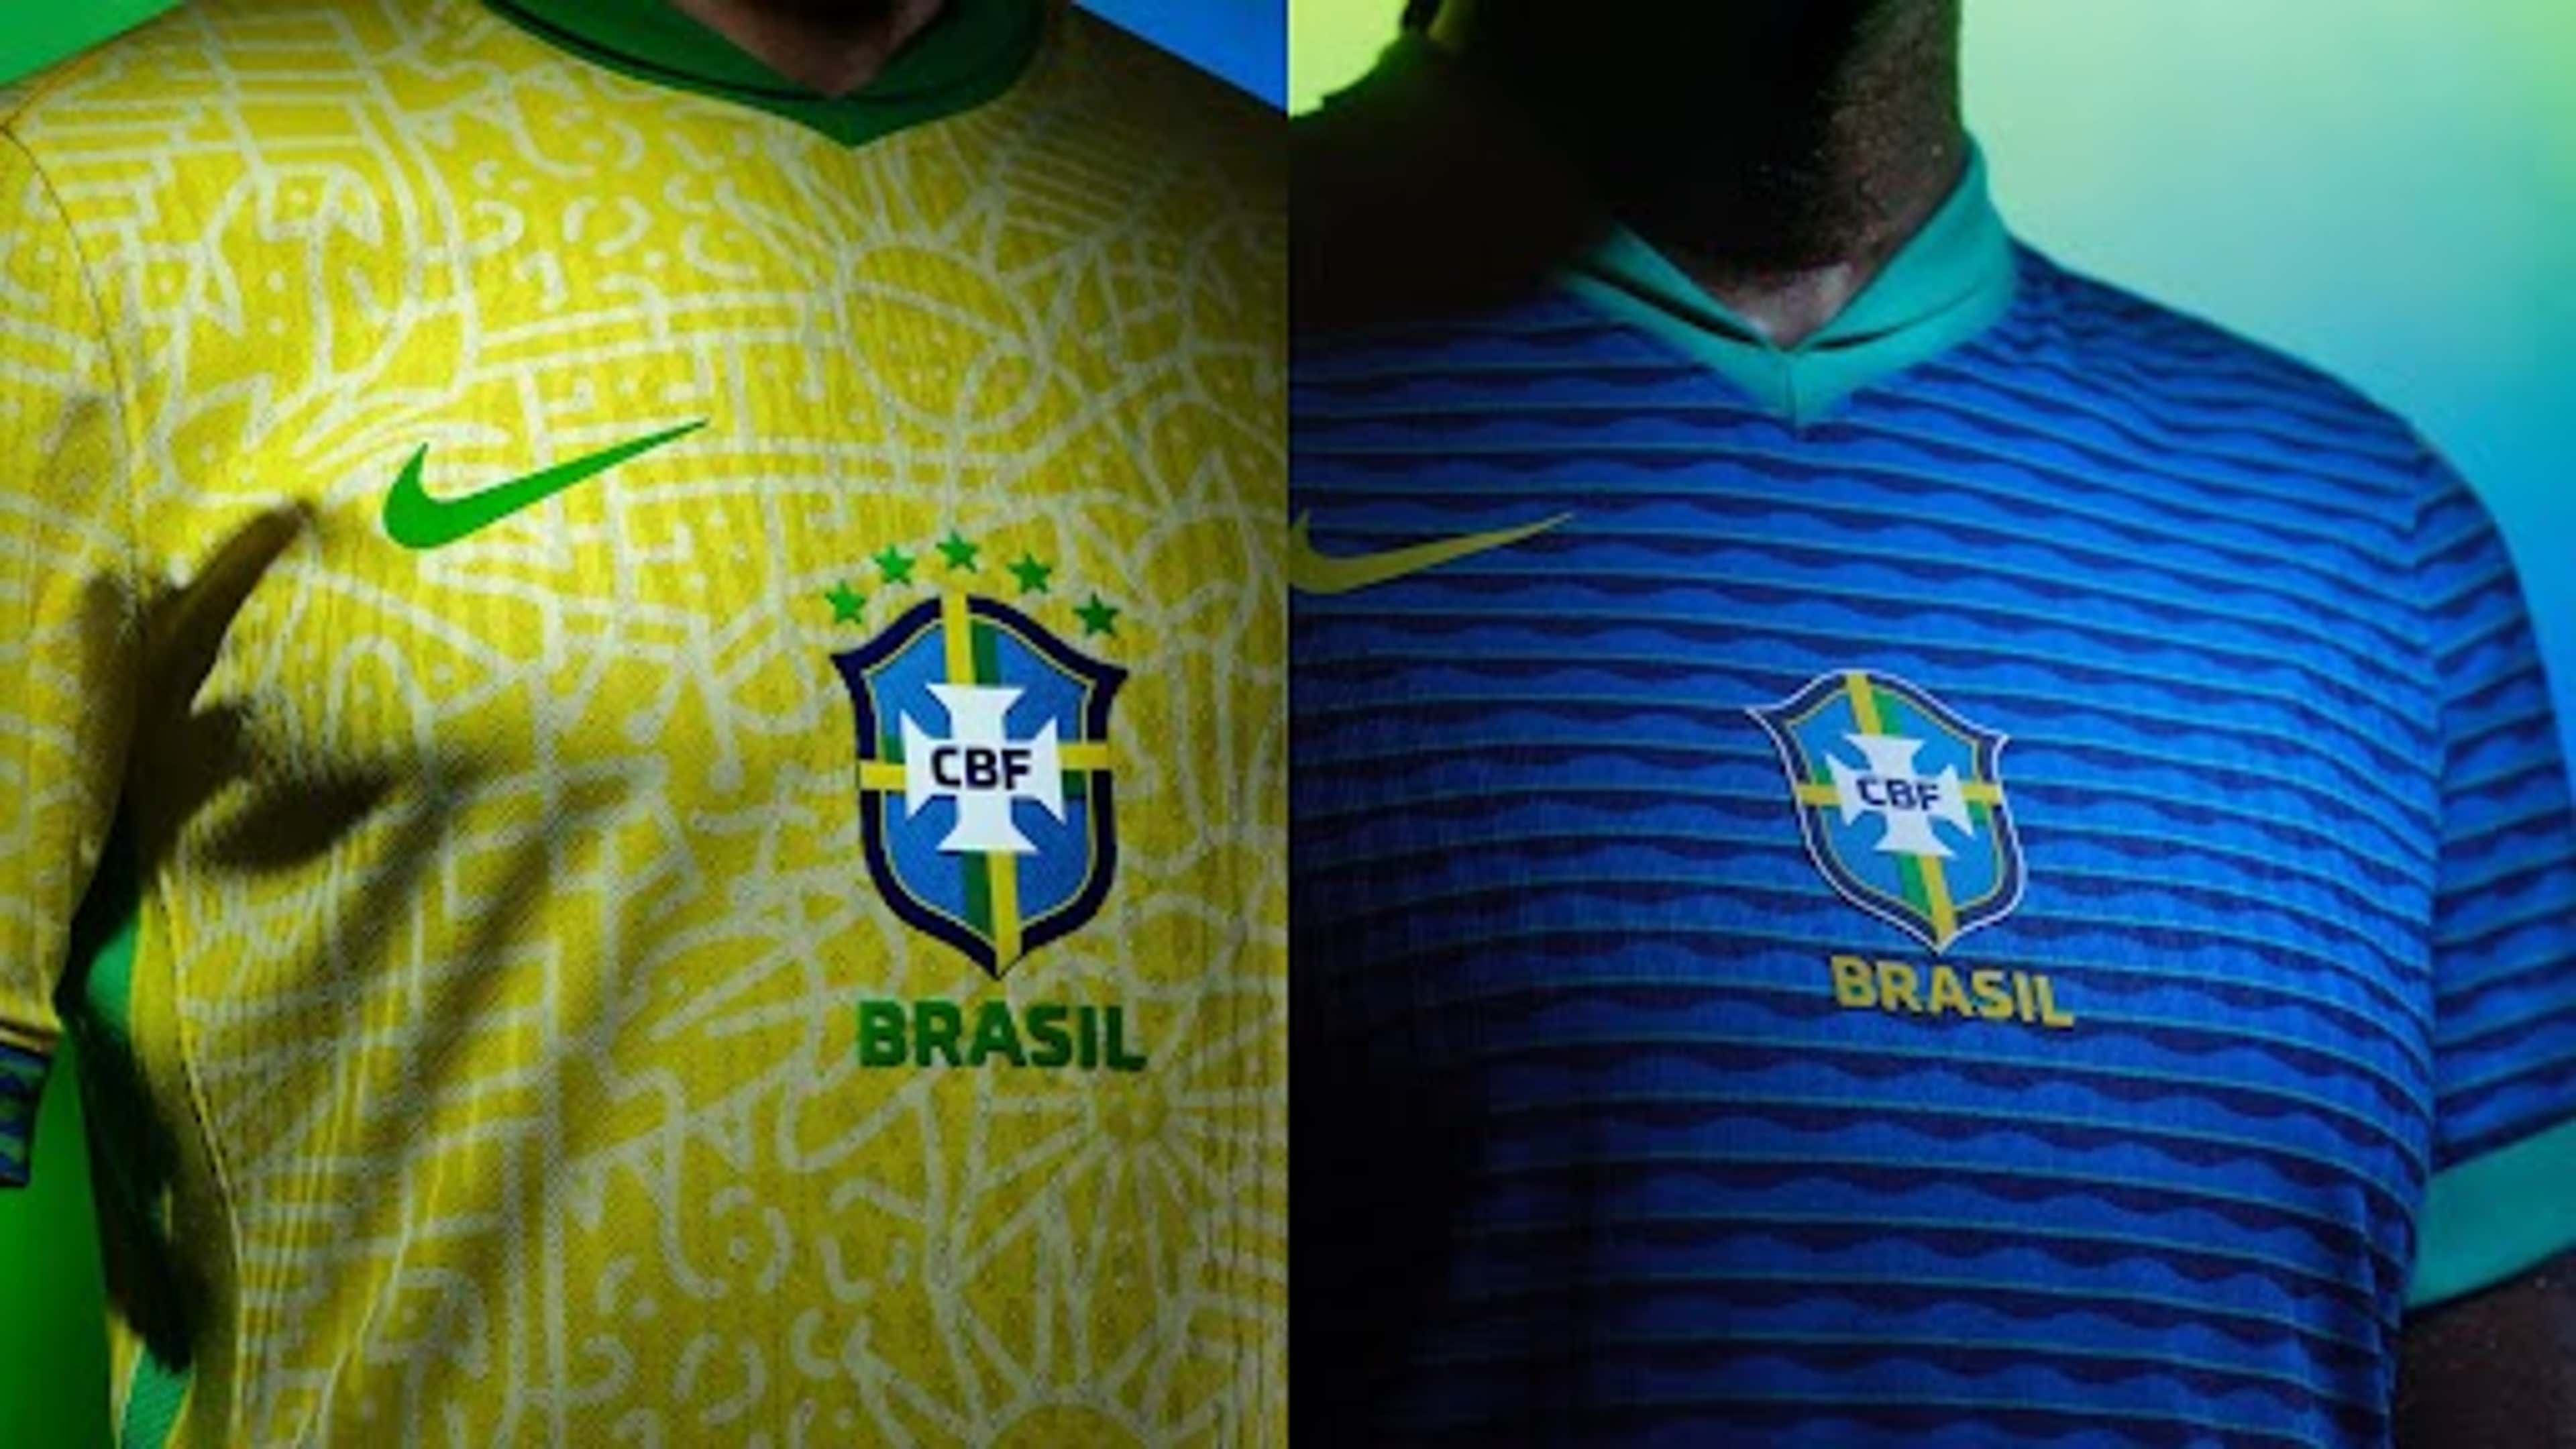 Camisa Oficial da Seleção Brasileira